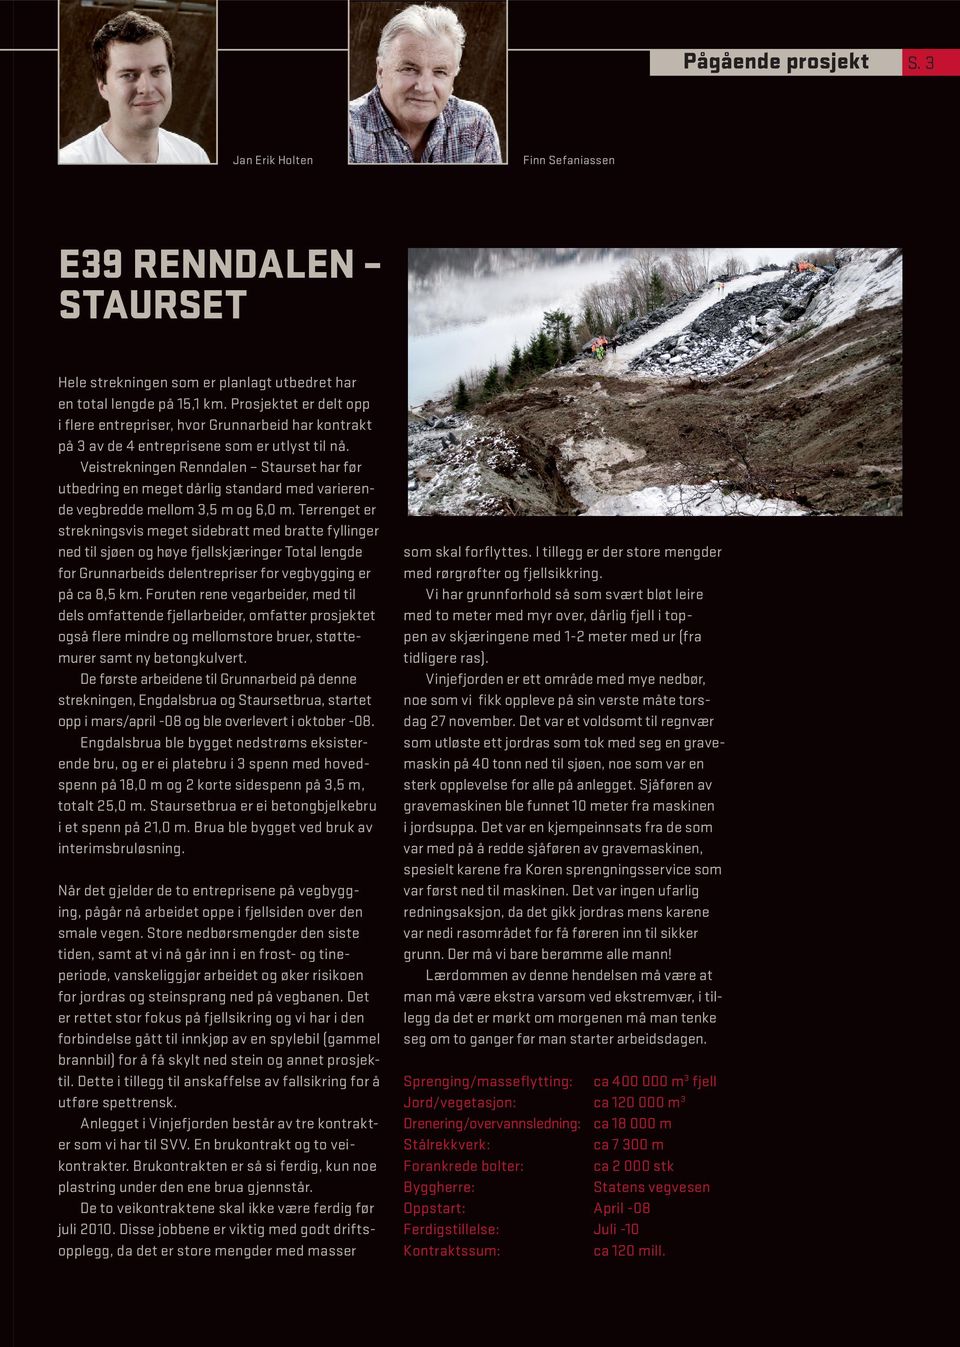 Veistrekningen Renndalen Staurset har før utbedring en meget dårlig standard med varierende vegbredde mellom 3,5 m og 6,0 m.